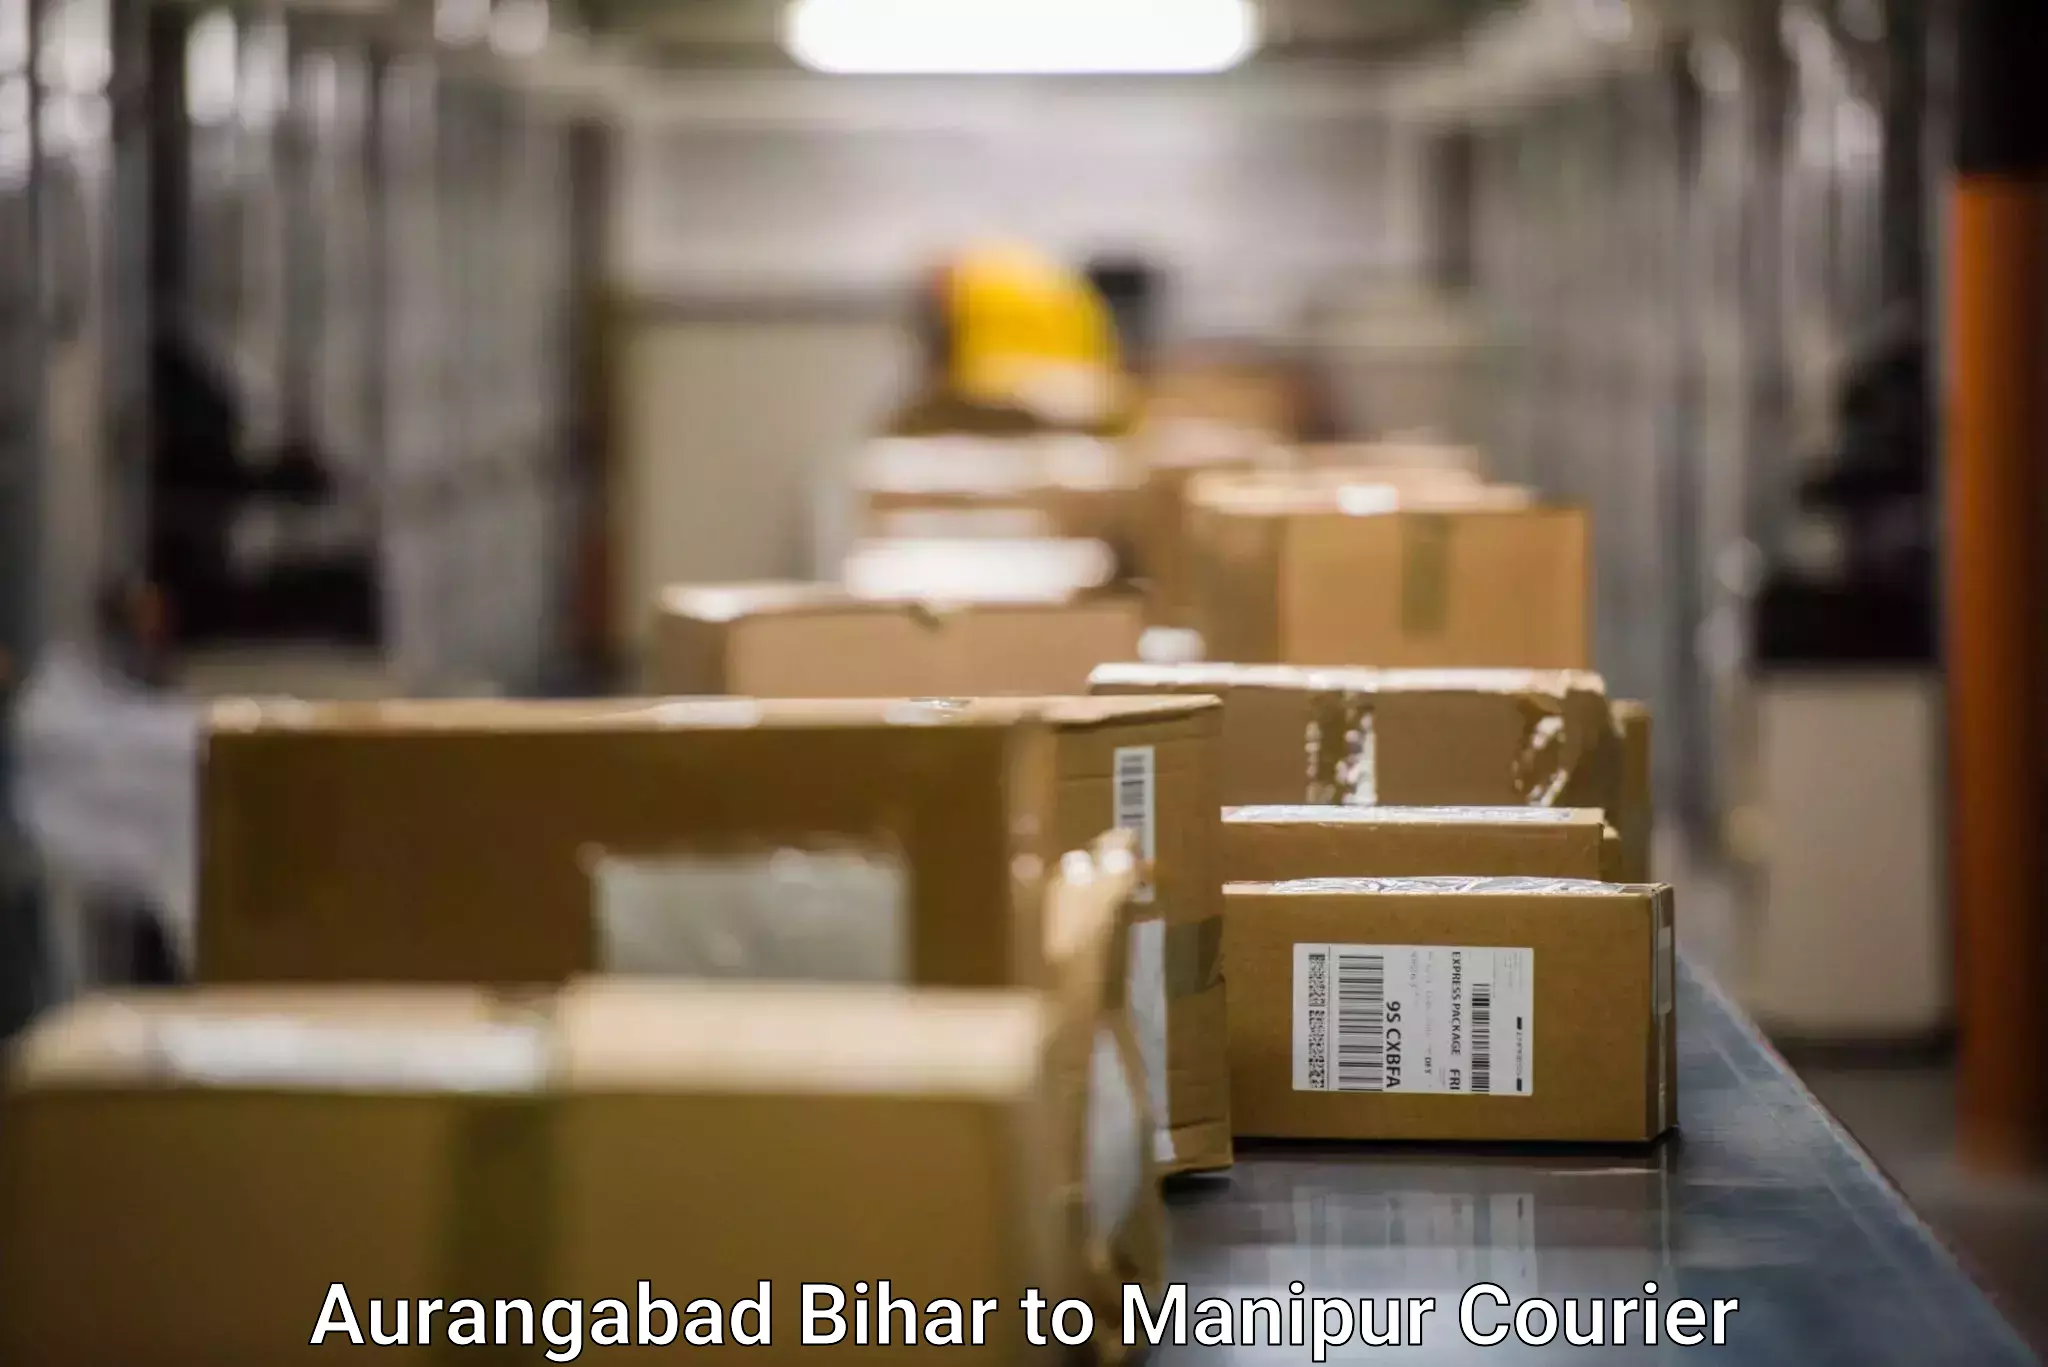 Reliable courier service Aurangabad Bihar to Chandel